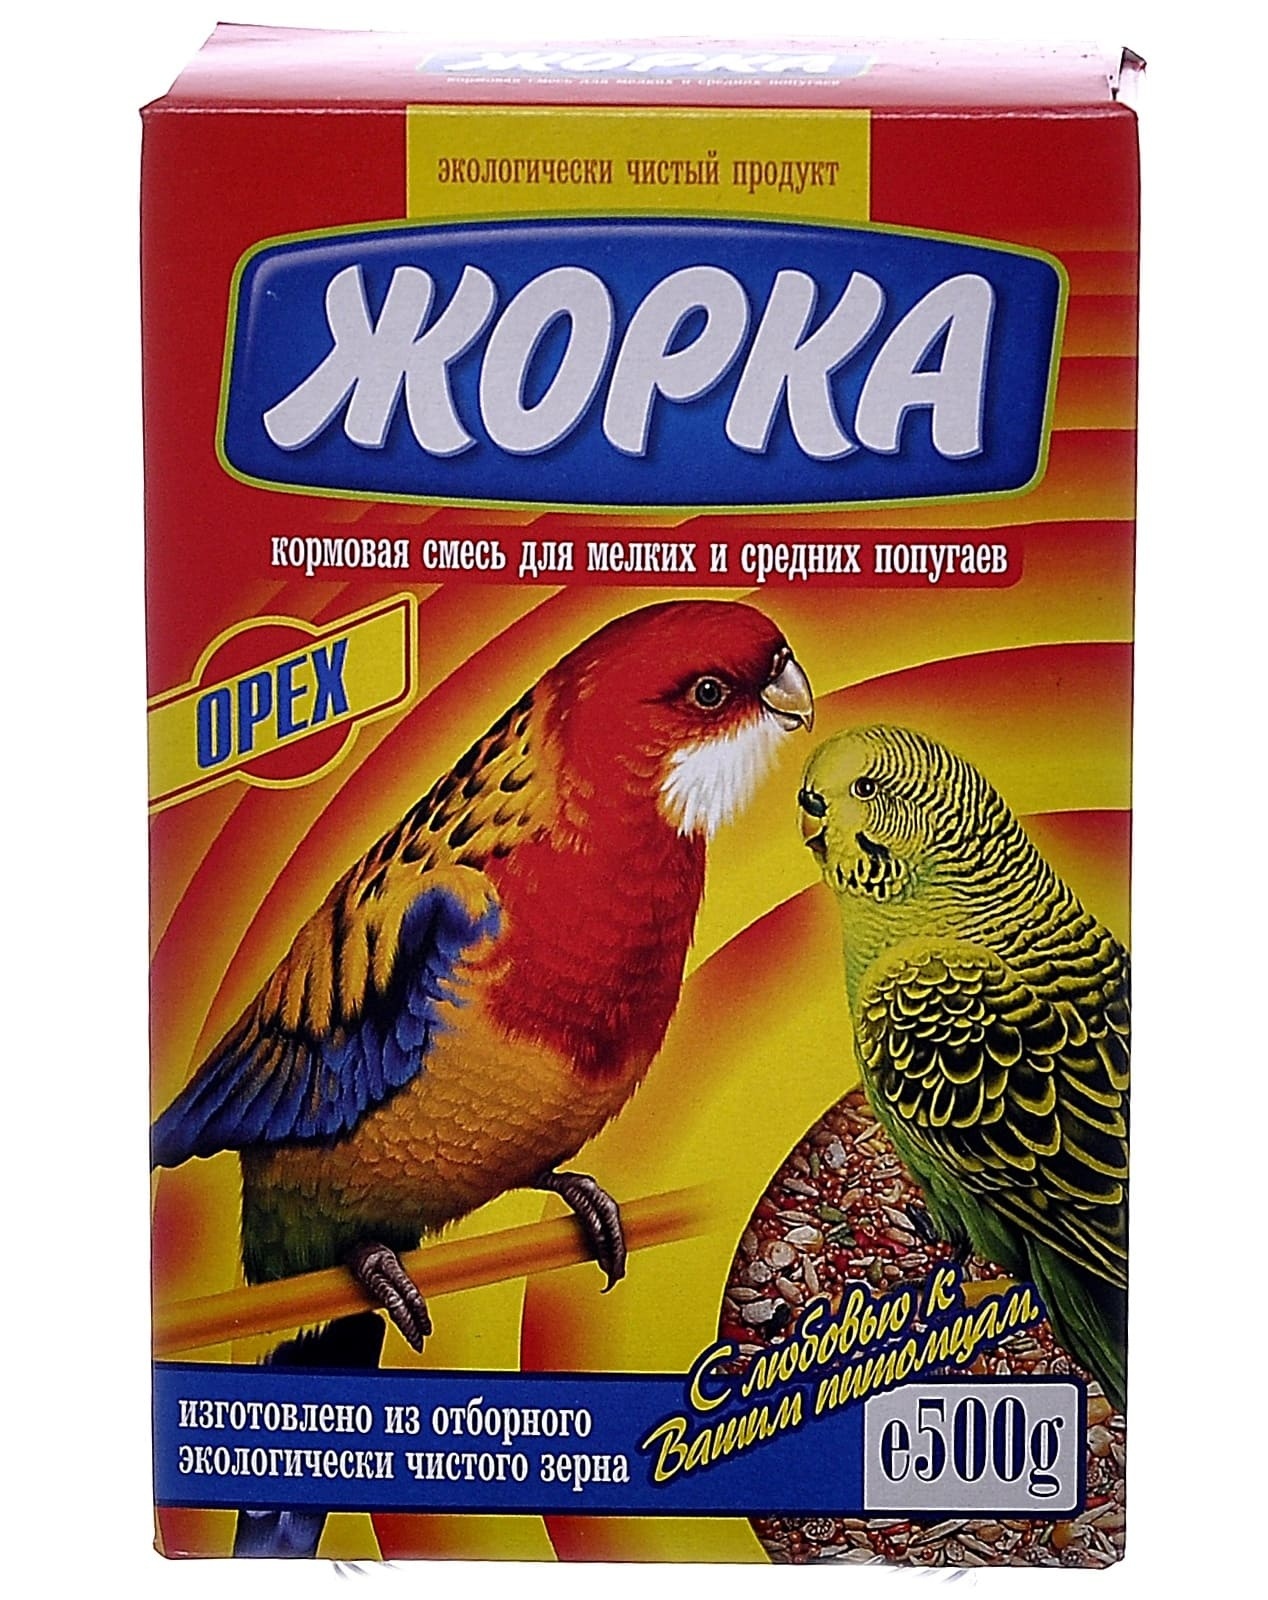 Жорка Жорка для мелких и средних попугаев с орехами (коробка) (500 г)